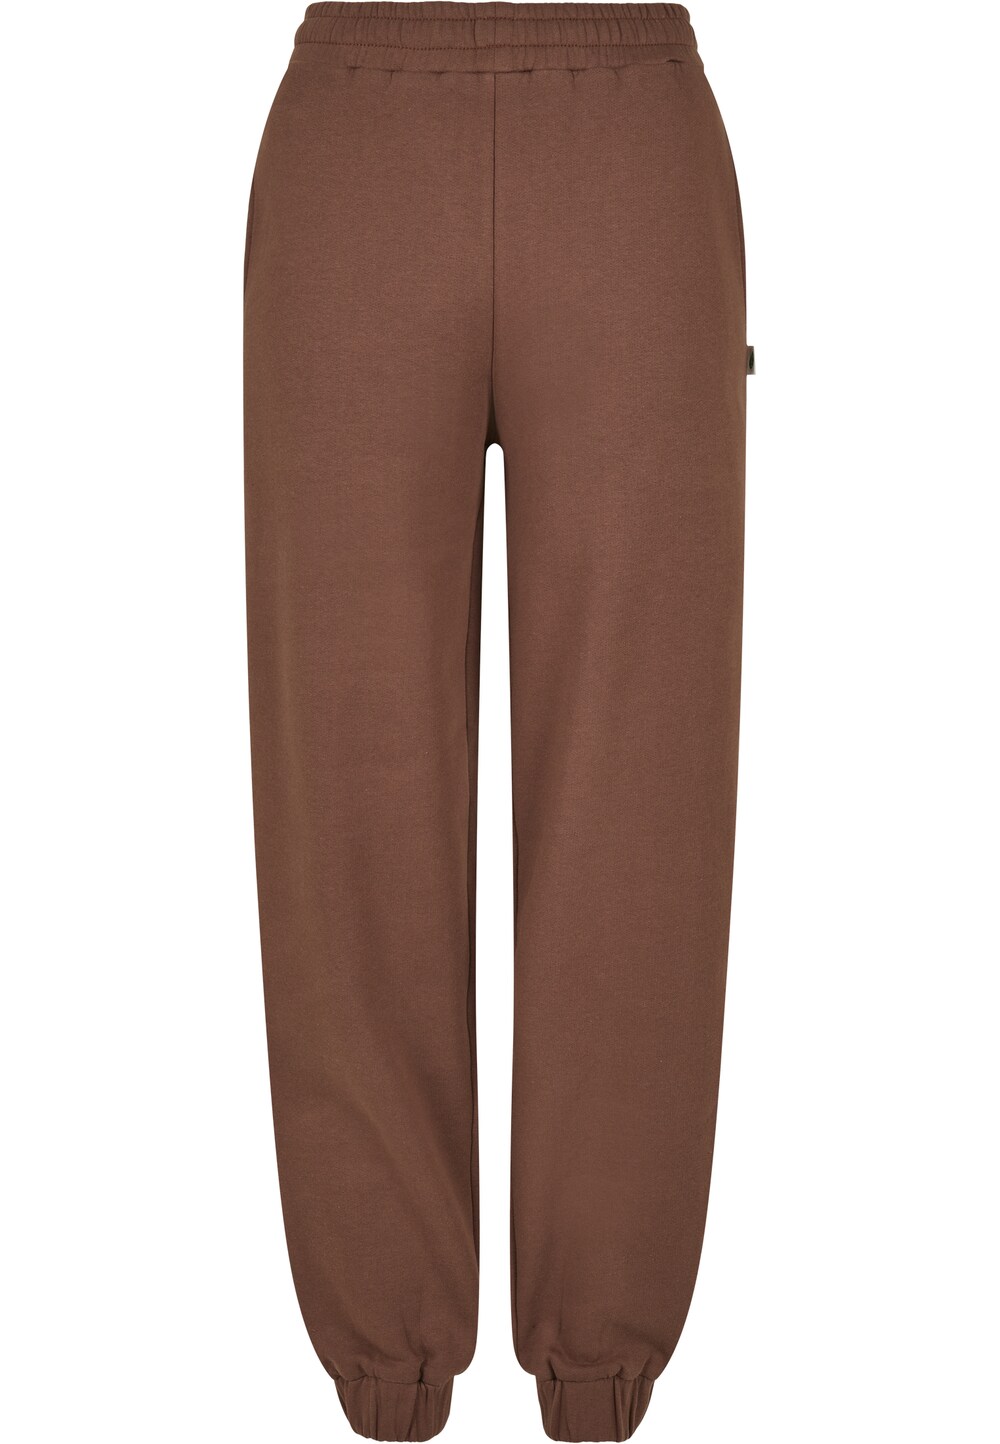 Зауженные брюки Urban Classics, коричневый